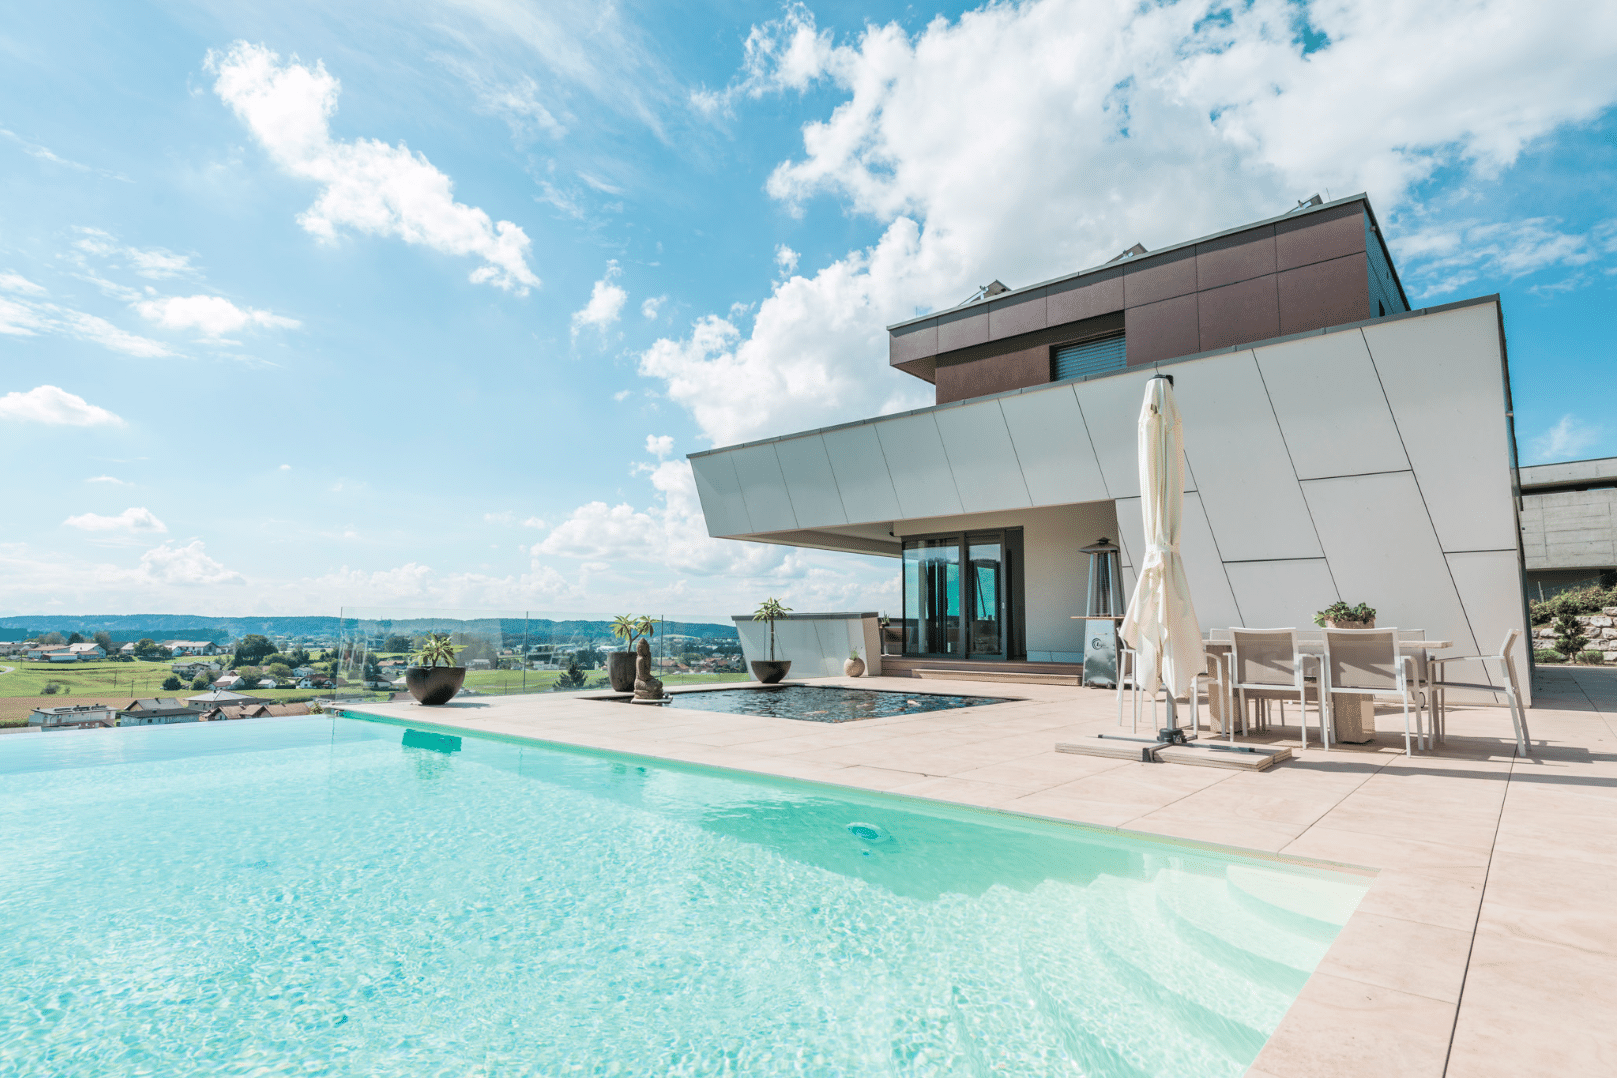 Internorm zeigt ein Architektenhaus mit außergewöhnlicher Gebäudeform in Hanglage mit großer Terrasse mit Pool und Teich.